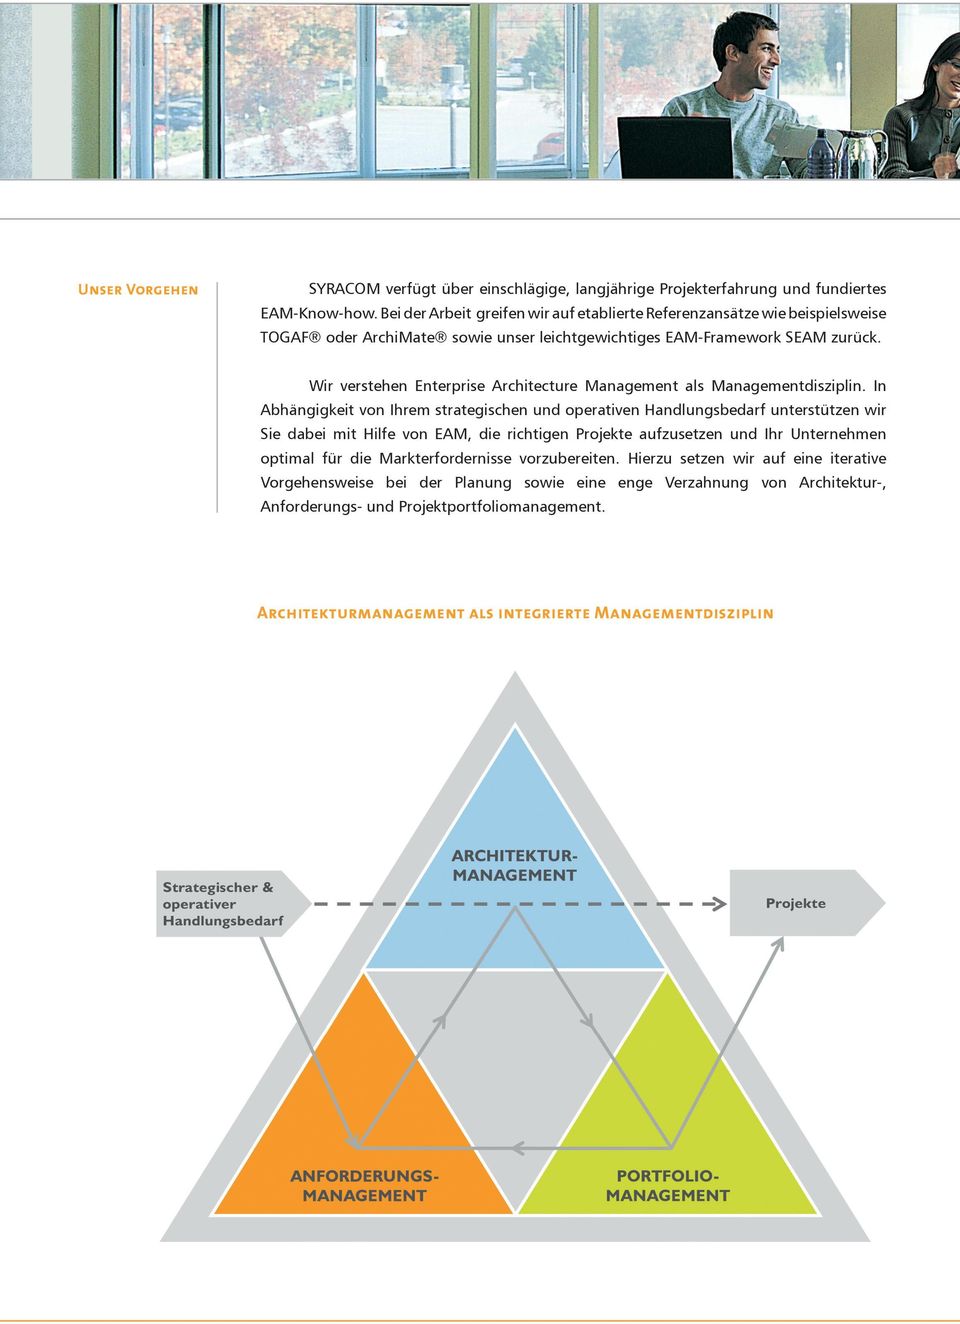 Wir verstehen Enterprise Architecture Management als Managementdisziplin.